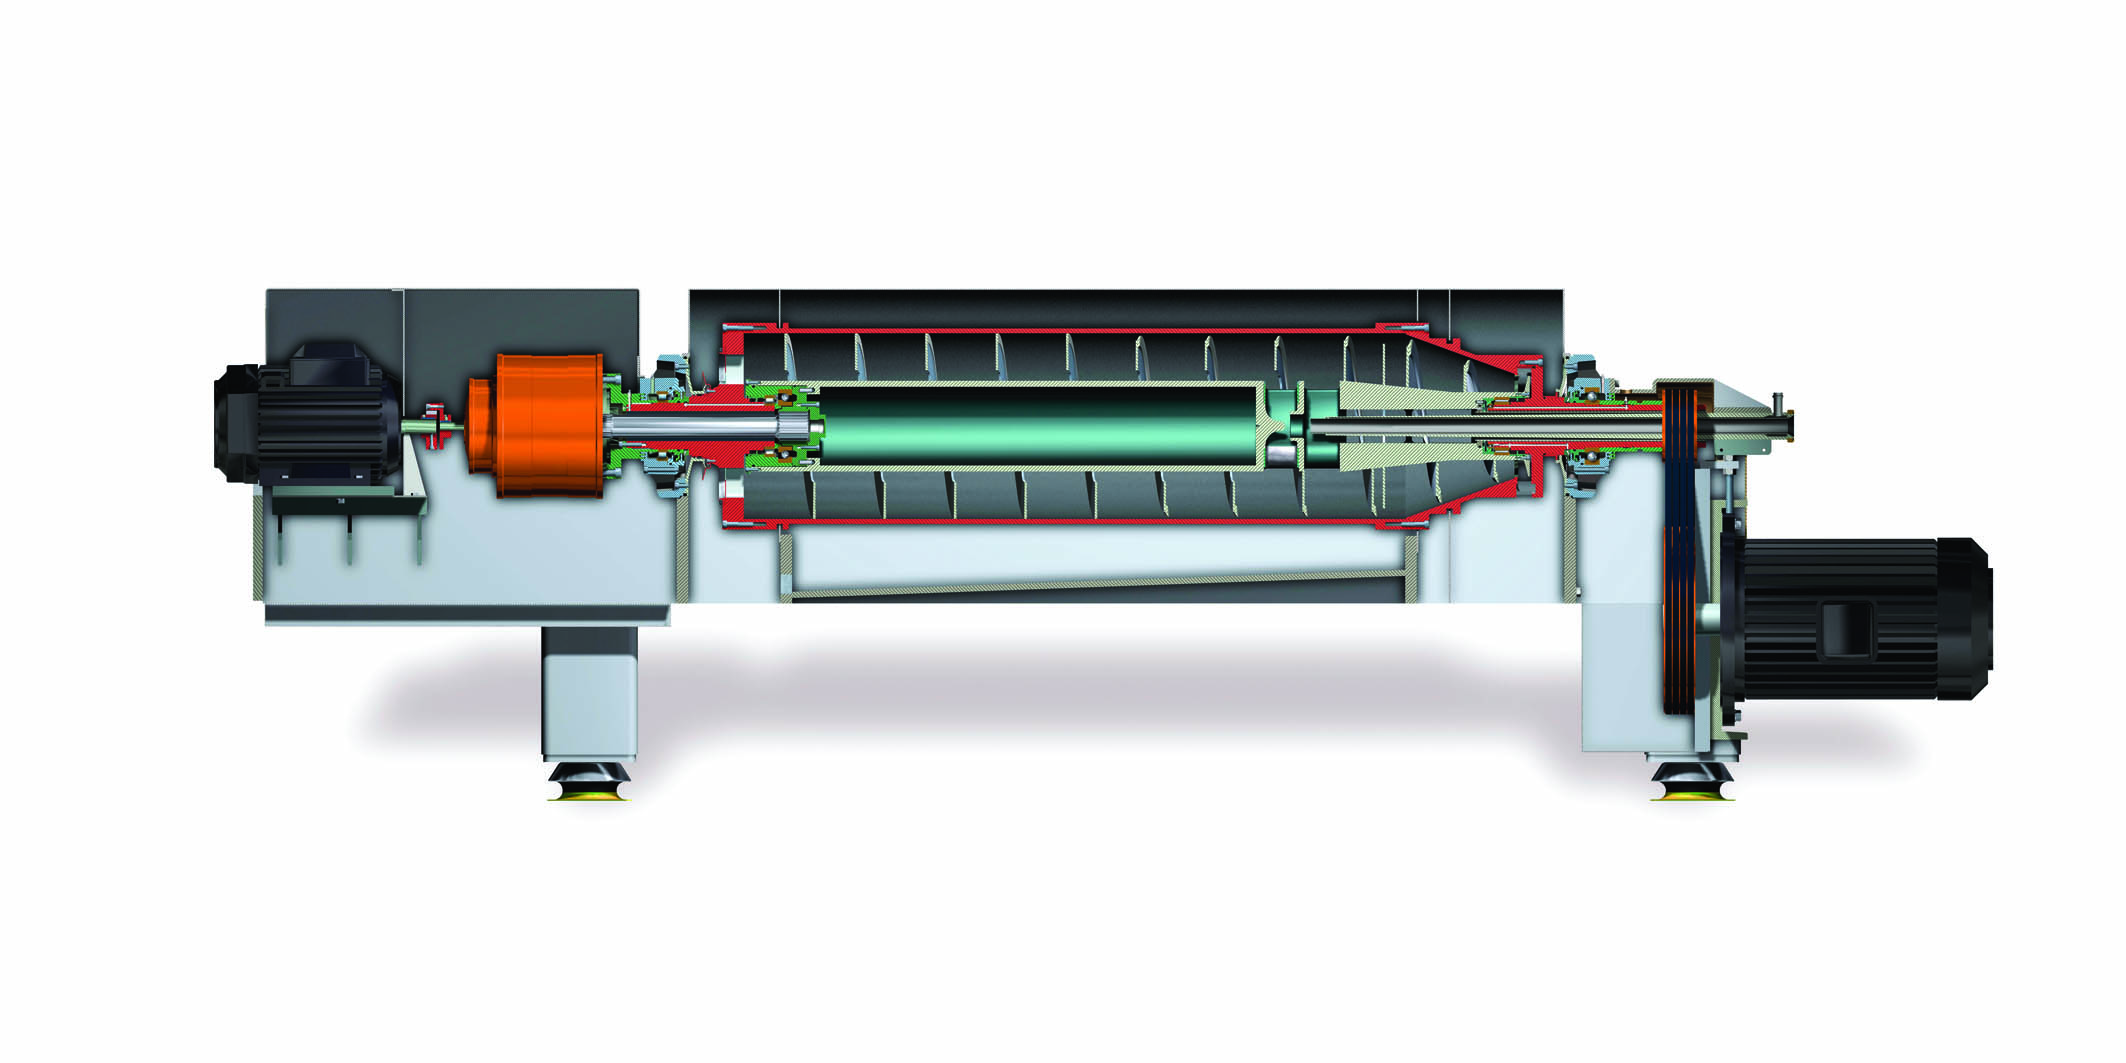 Imagen en planta del interior de un decanter centrifugo donde se puede indentificar los casquillos, los motores, la proteccion antidesgaste, etc